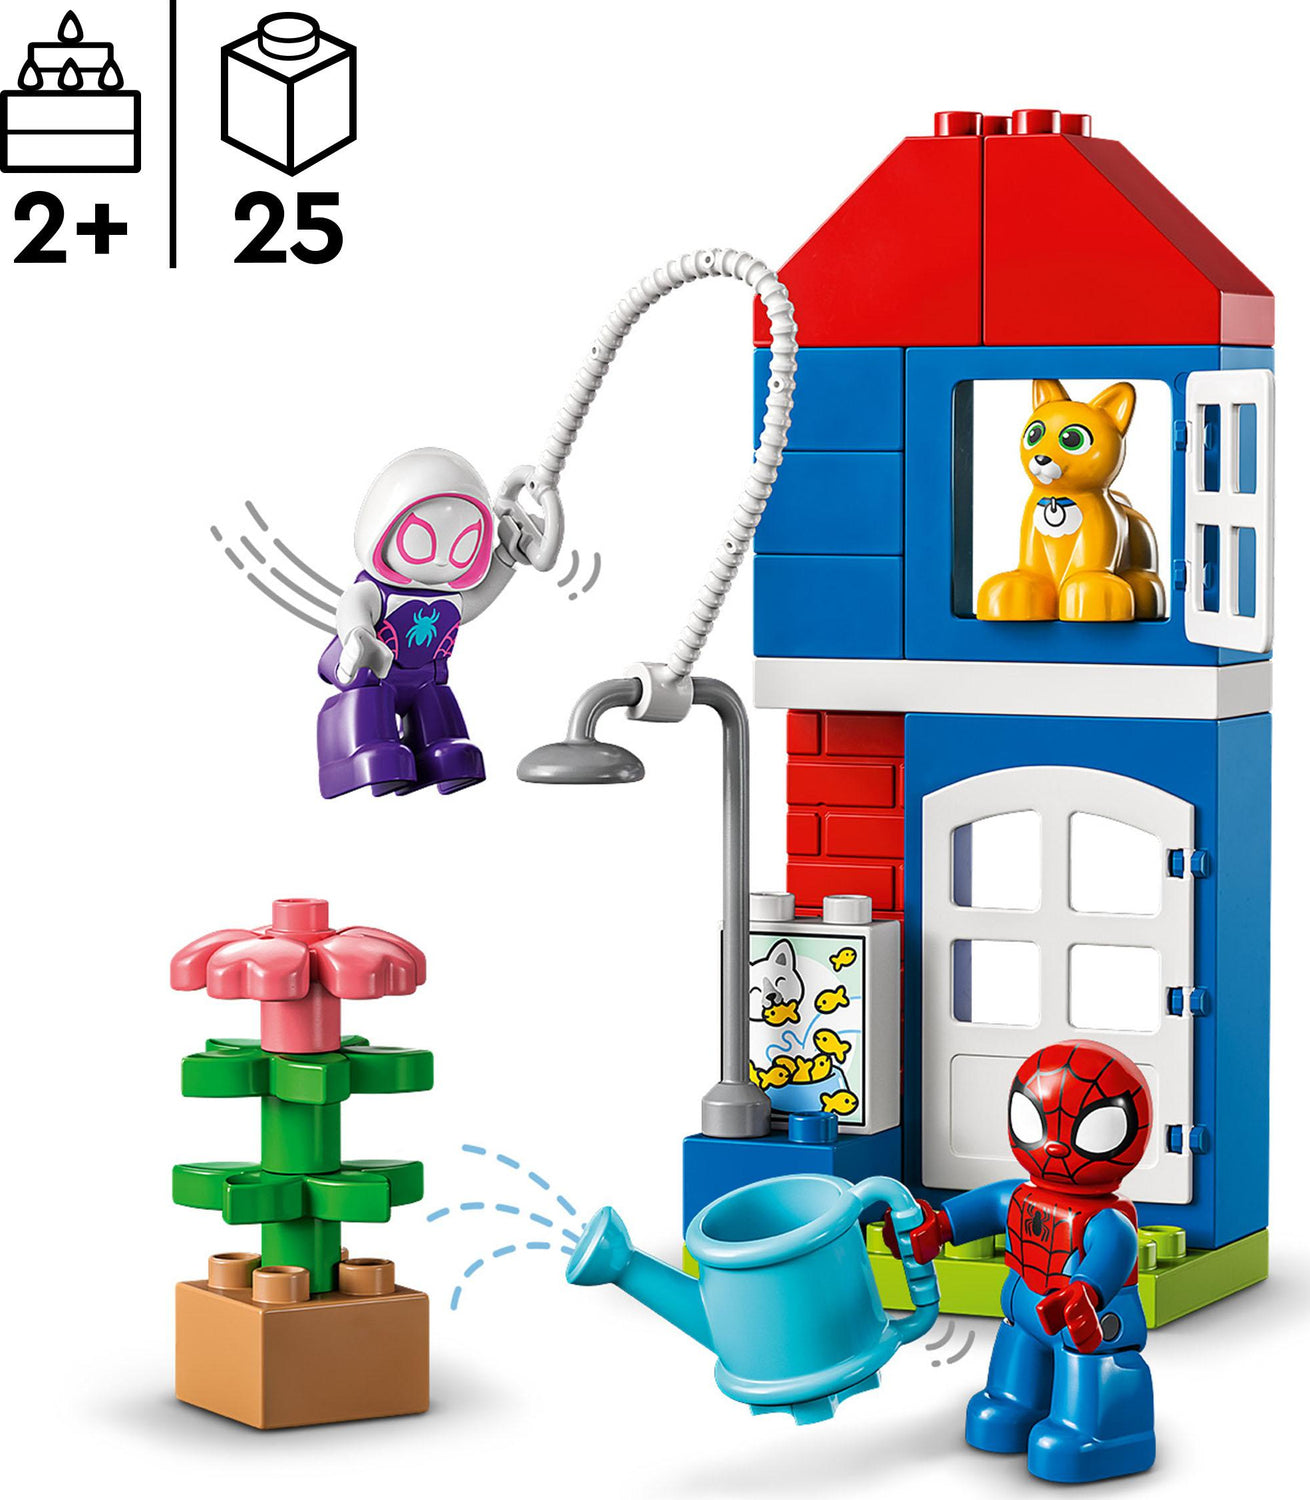 LEGO® DUPLO: La casa de Spider-Man